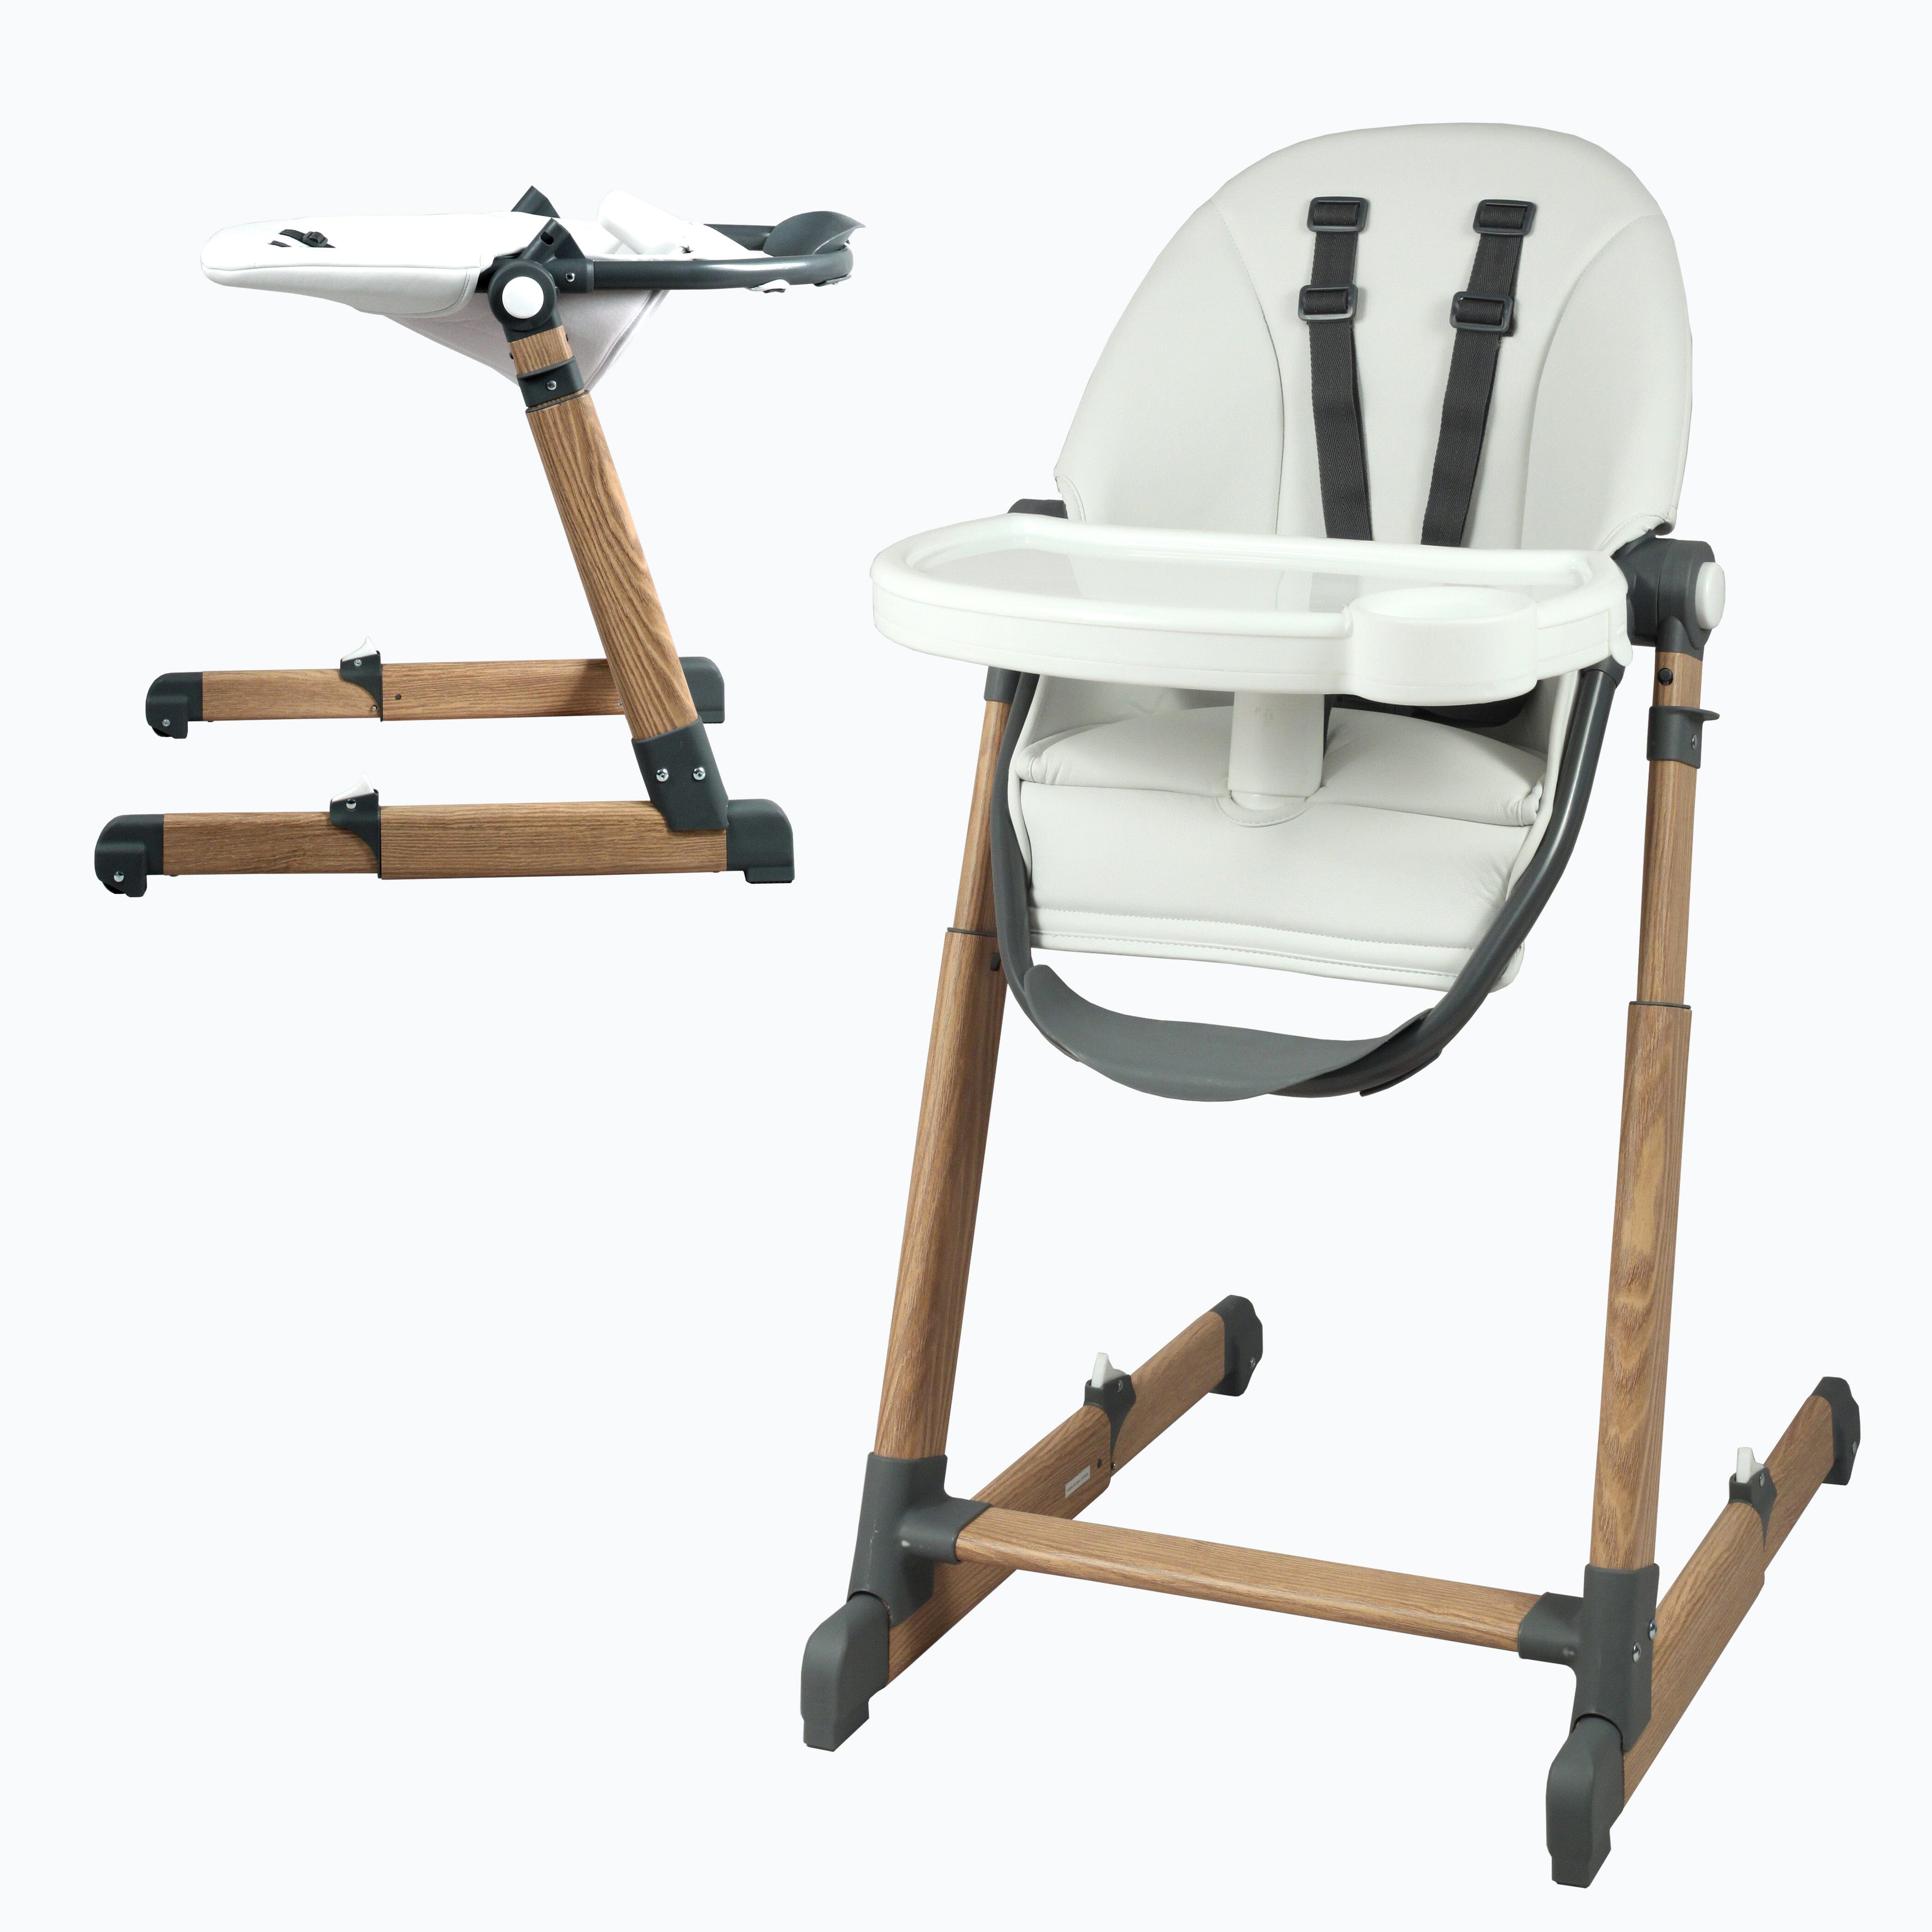 Chaise haute bébé évolutive & ultra compacte